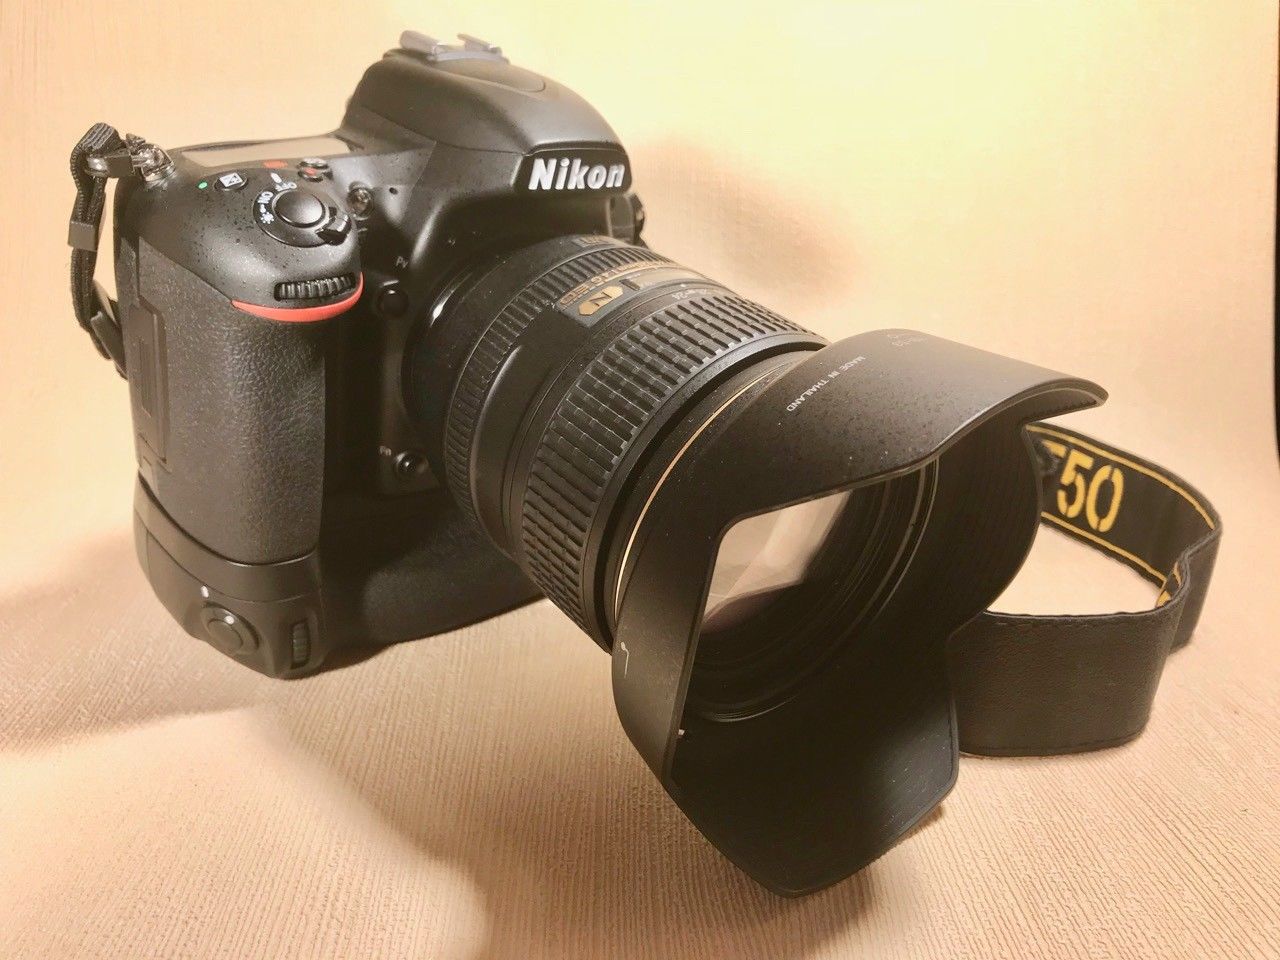 Nikon D D750 24.3MP Digitalkamera - Schwarz (Kit mit AF-S VR 24-120mm Objektiv)